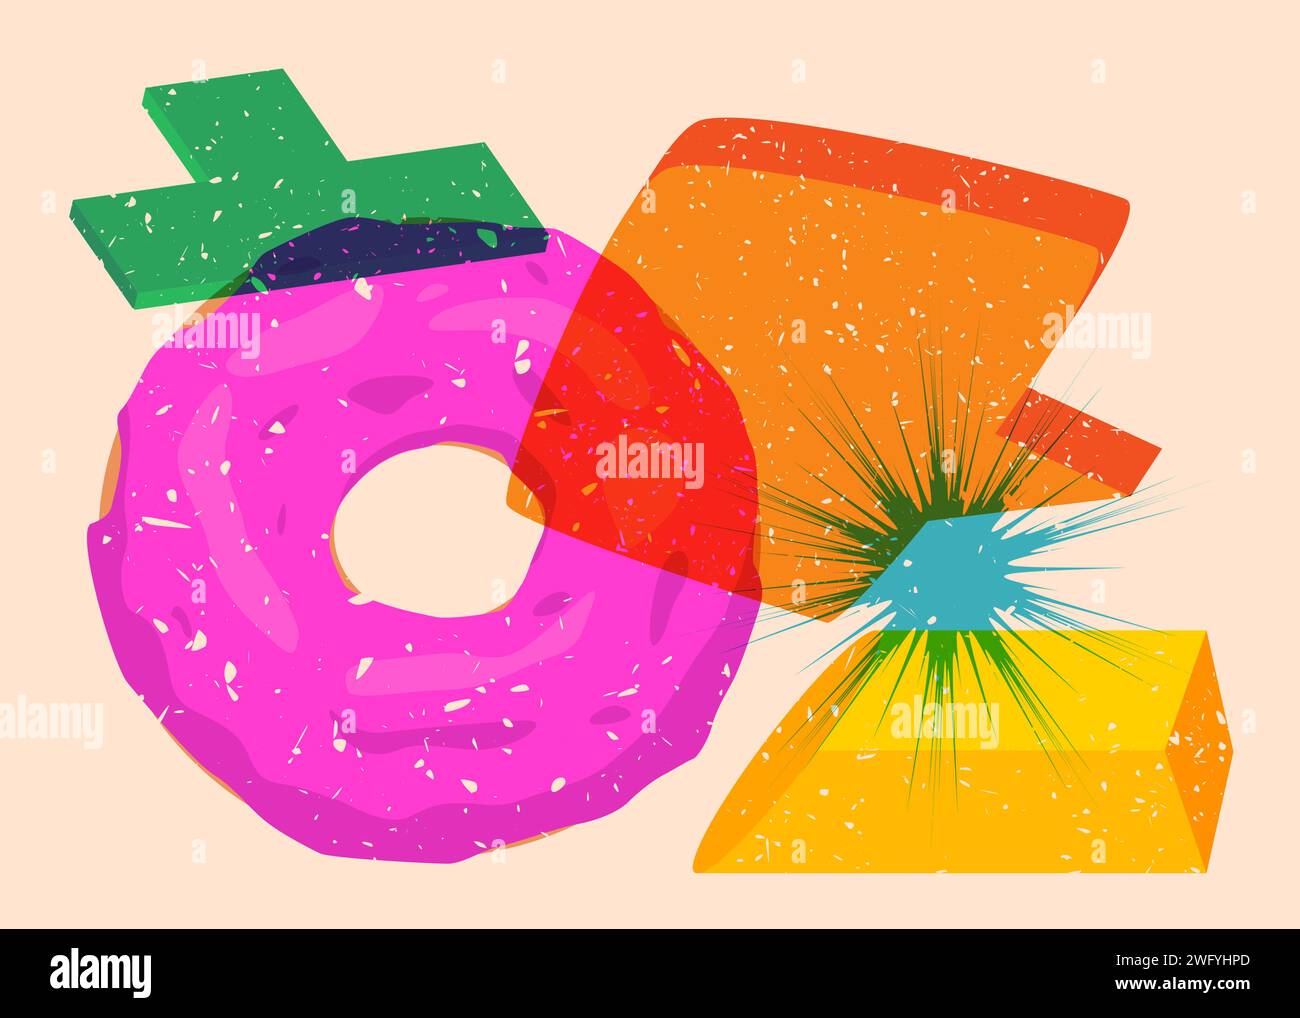 Risograph Doughnut, comida dulce con burbuja de discurso con formas geométricas. Postre en diseño de estilo de textura de impresión riso gráfico de moda con elemento de geometría Ilustración del Vector